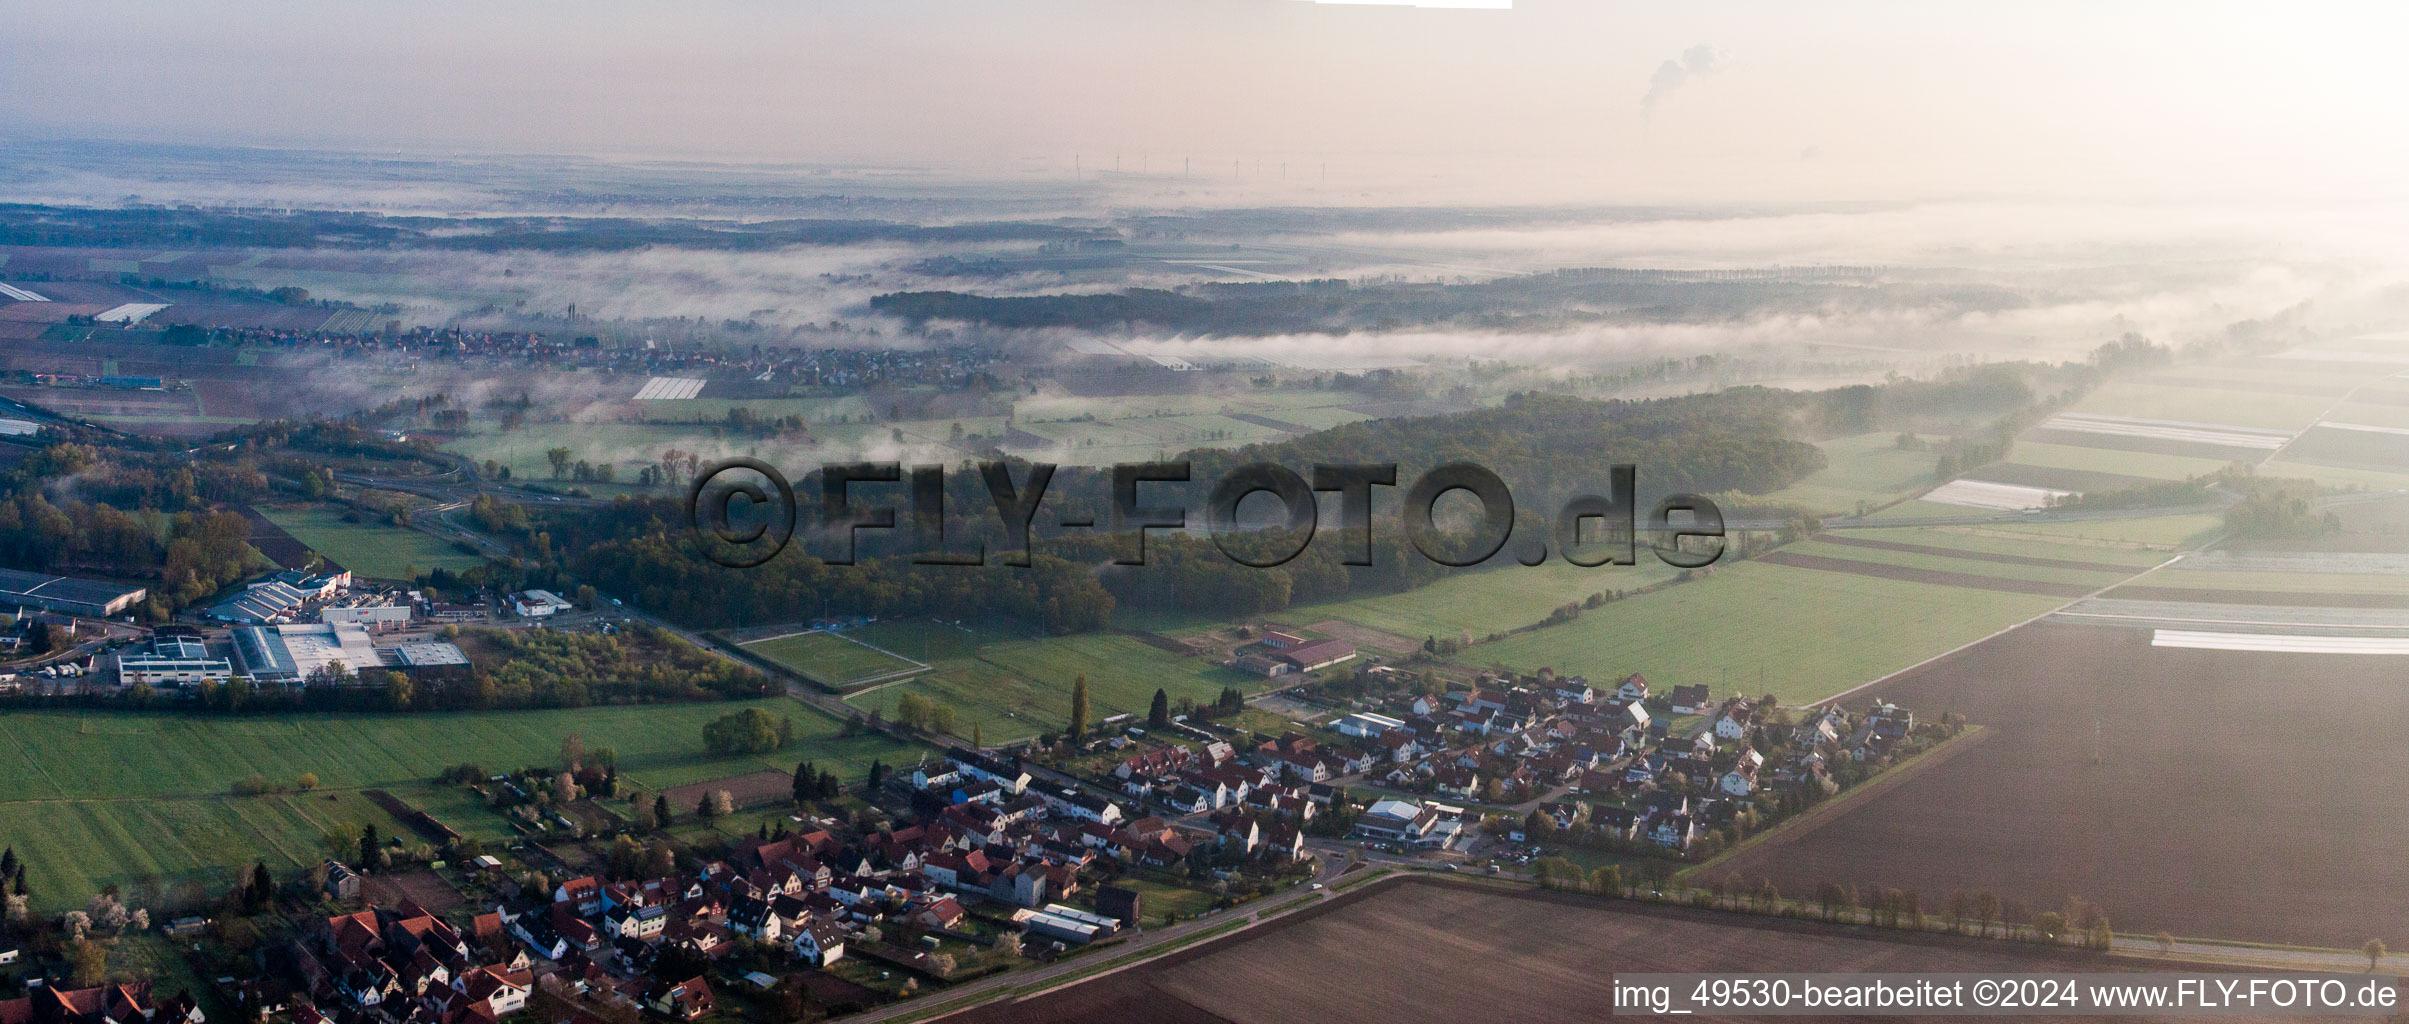 Photographie aérienne de Champs agricoles et surfaces utilisables à le quartier Minderslachen in Kandel dans le département Rhénanie-Palatinat, Allemagne